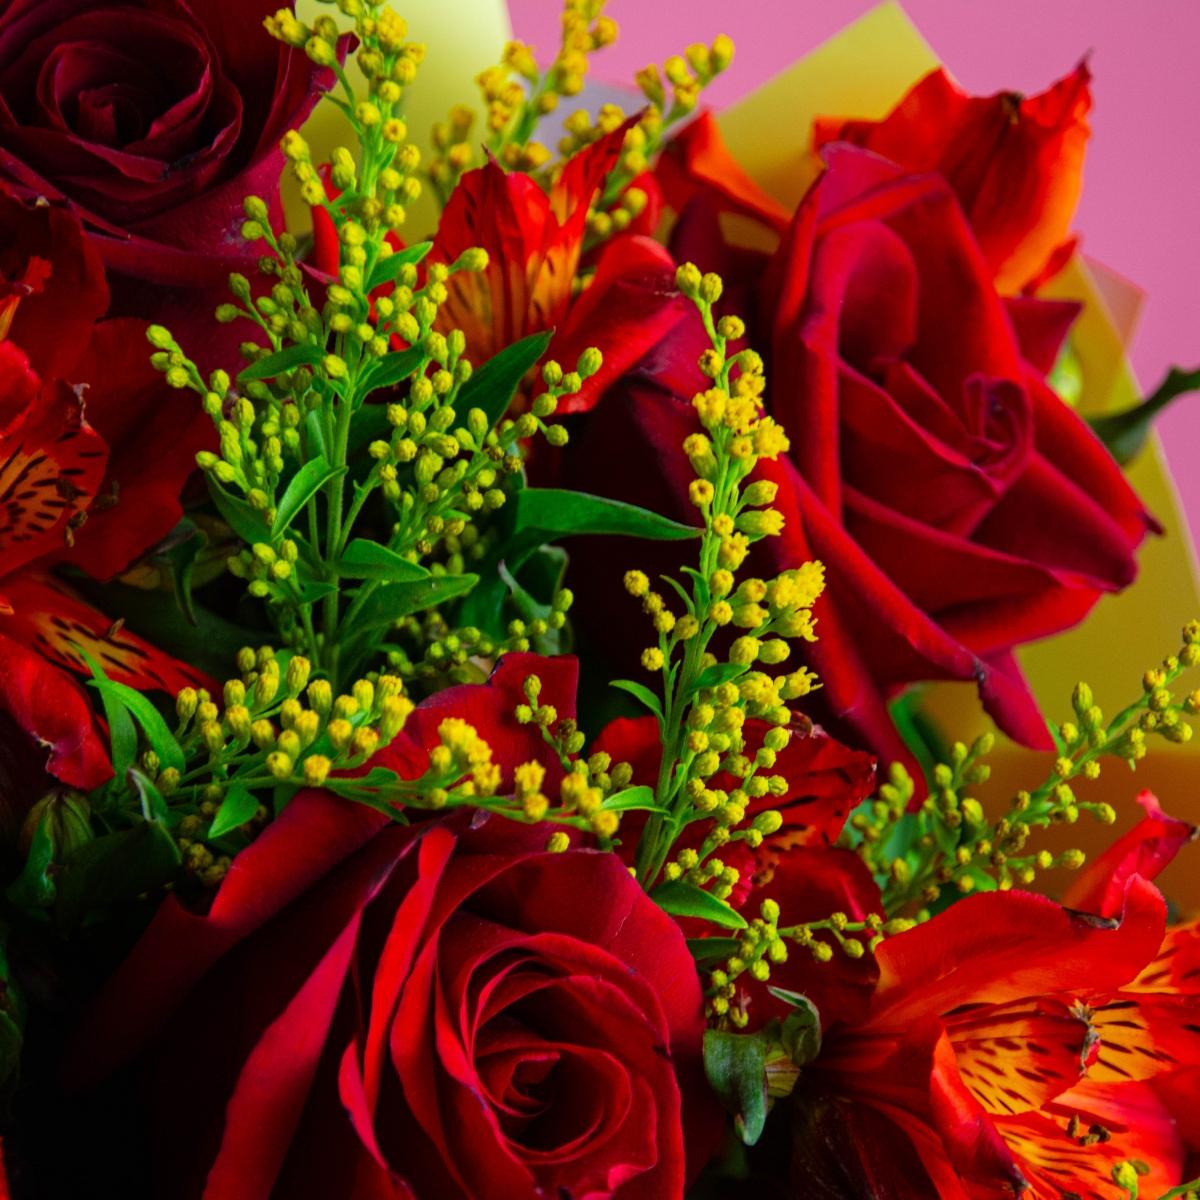 7 красных роз с альстромериями